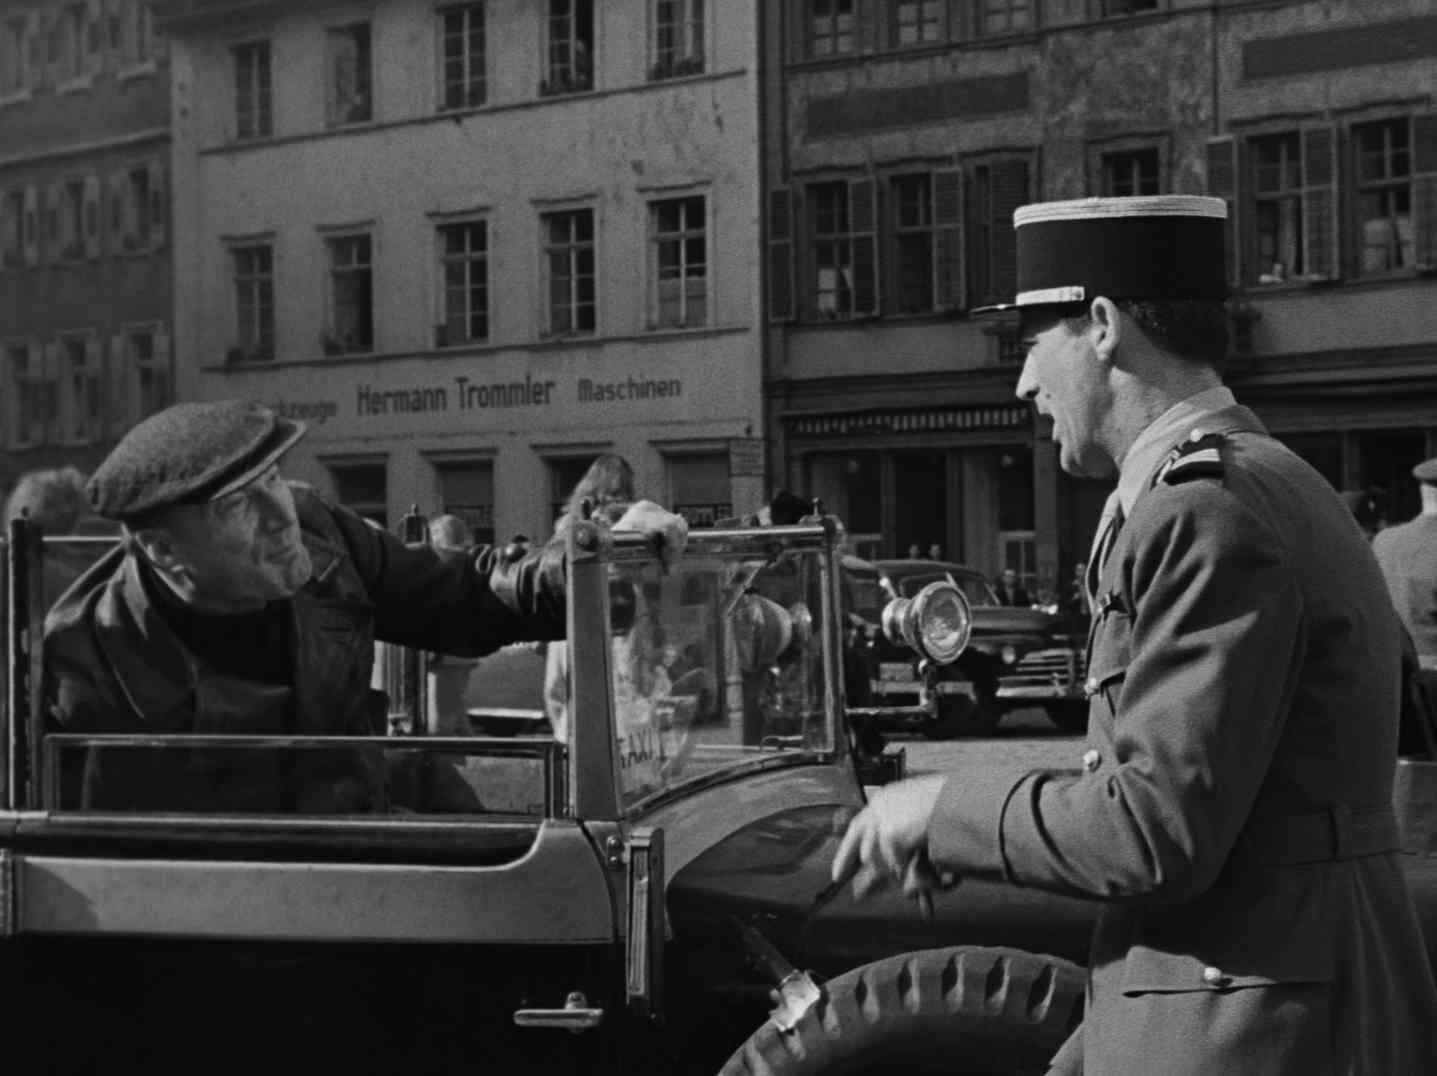 Cary Grant als französischer Offizier im Gespräch mit seinem Fahrer, der im offenen Wagen sitzt; im Hintergrund steht an der Fassade eines Hauses „Hermann Trommler Maschinen“.